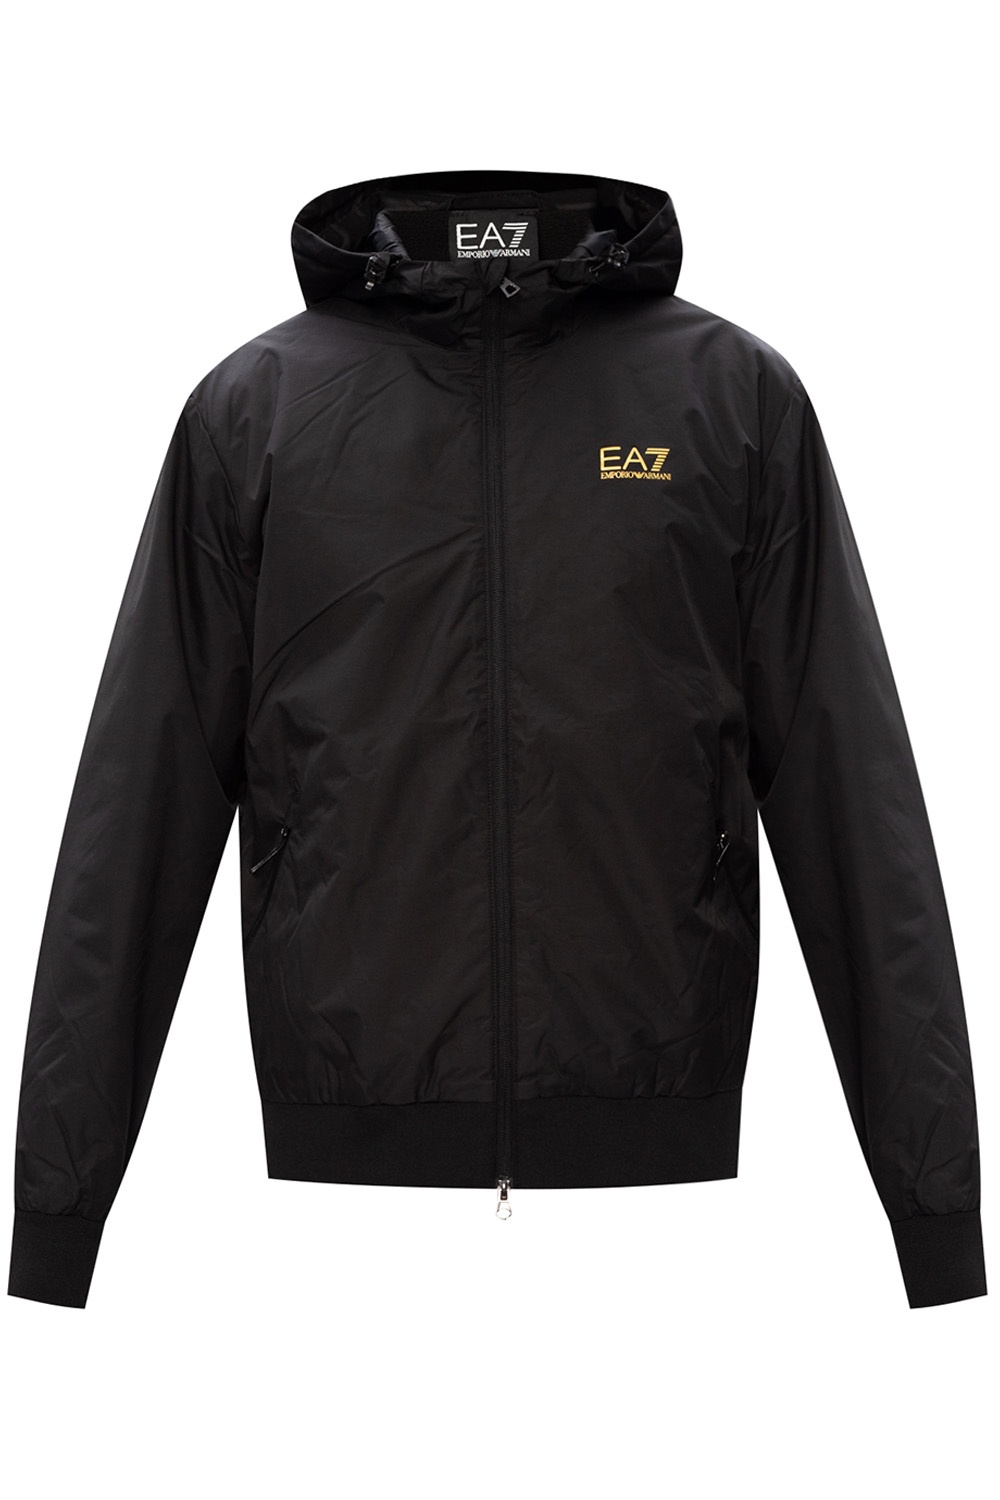 ea7 coats sale